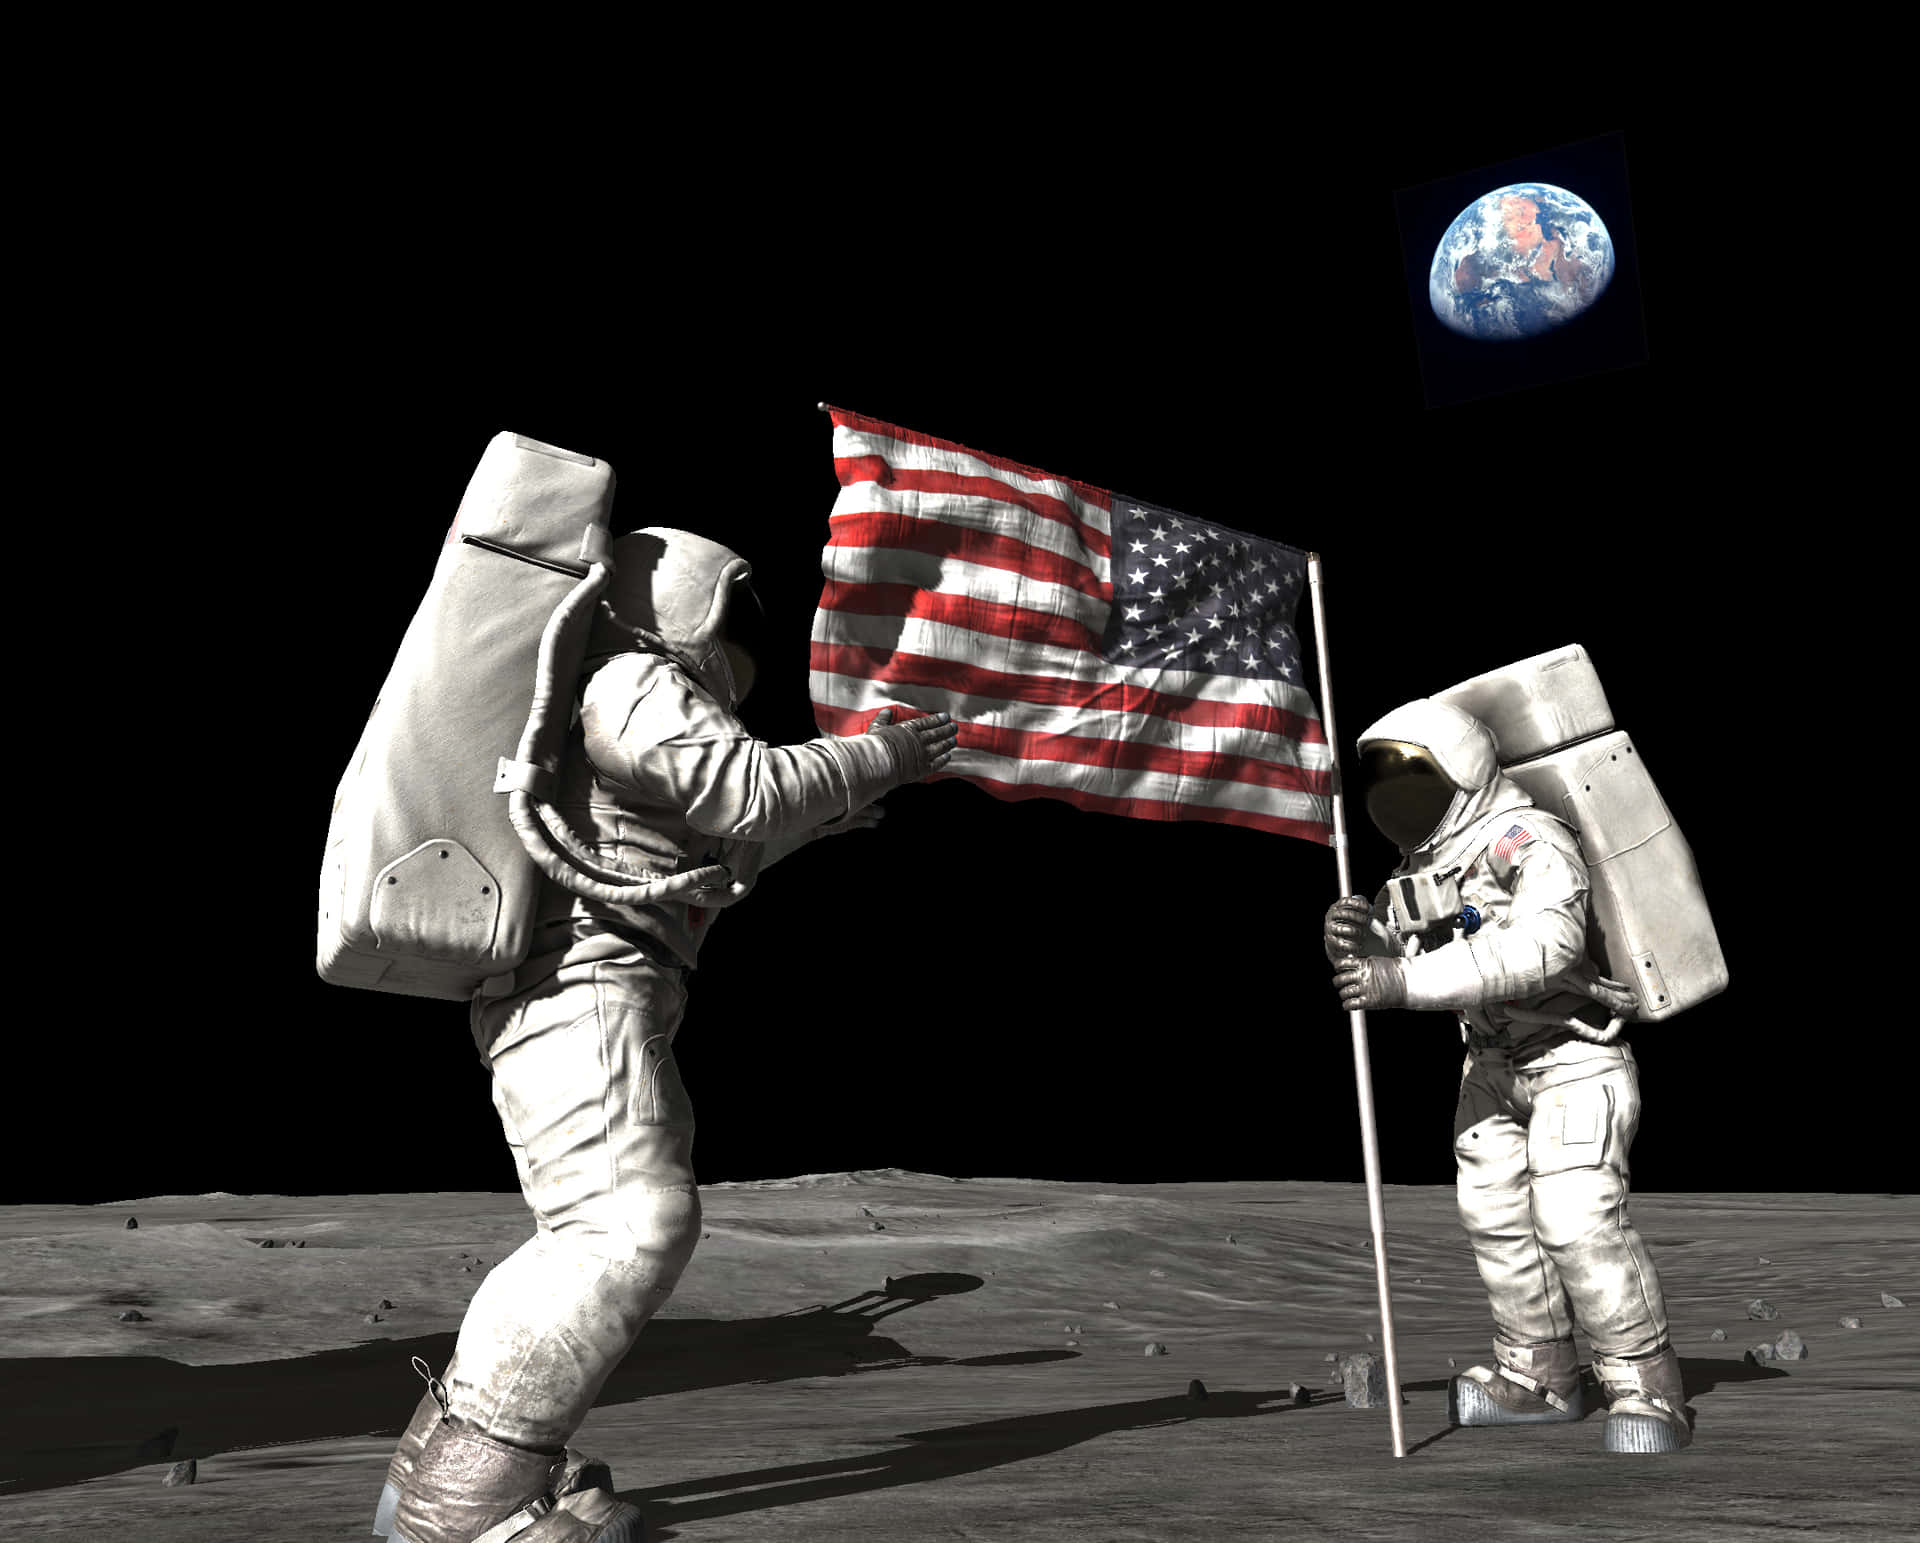 Aprimeira Aterrissagem Na Lua - 20 De Julho De 1969.